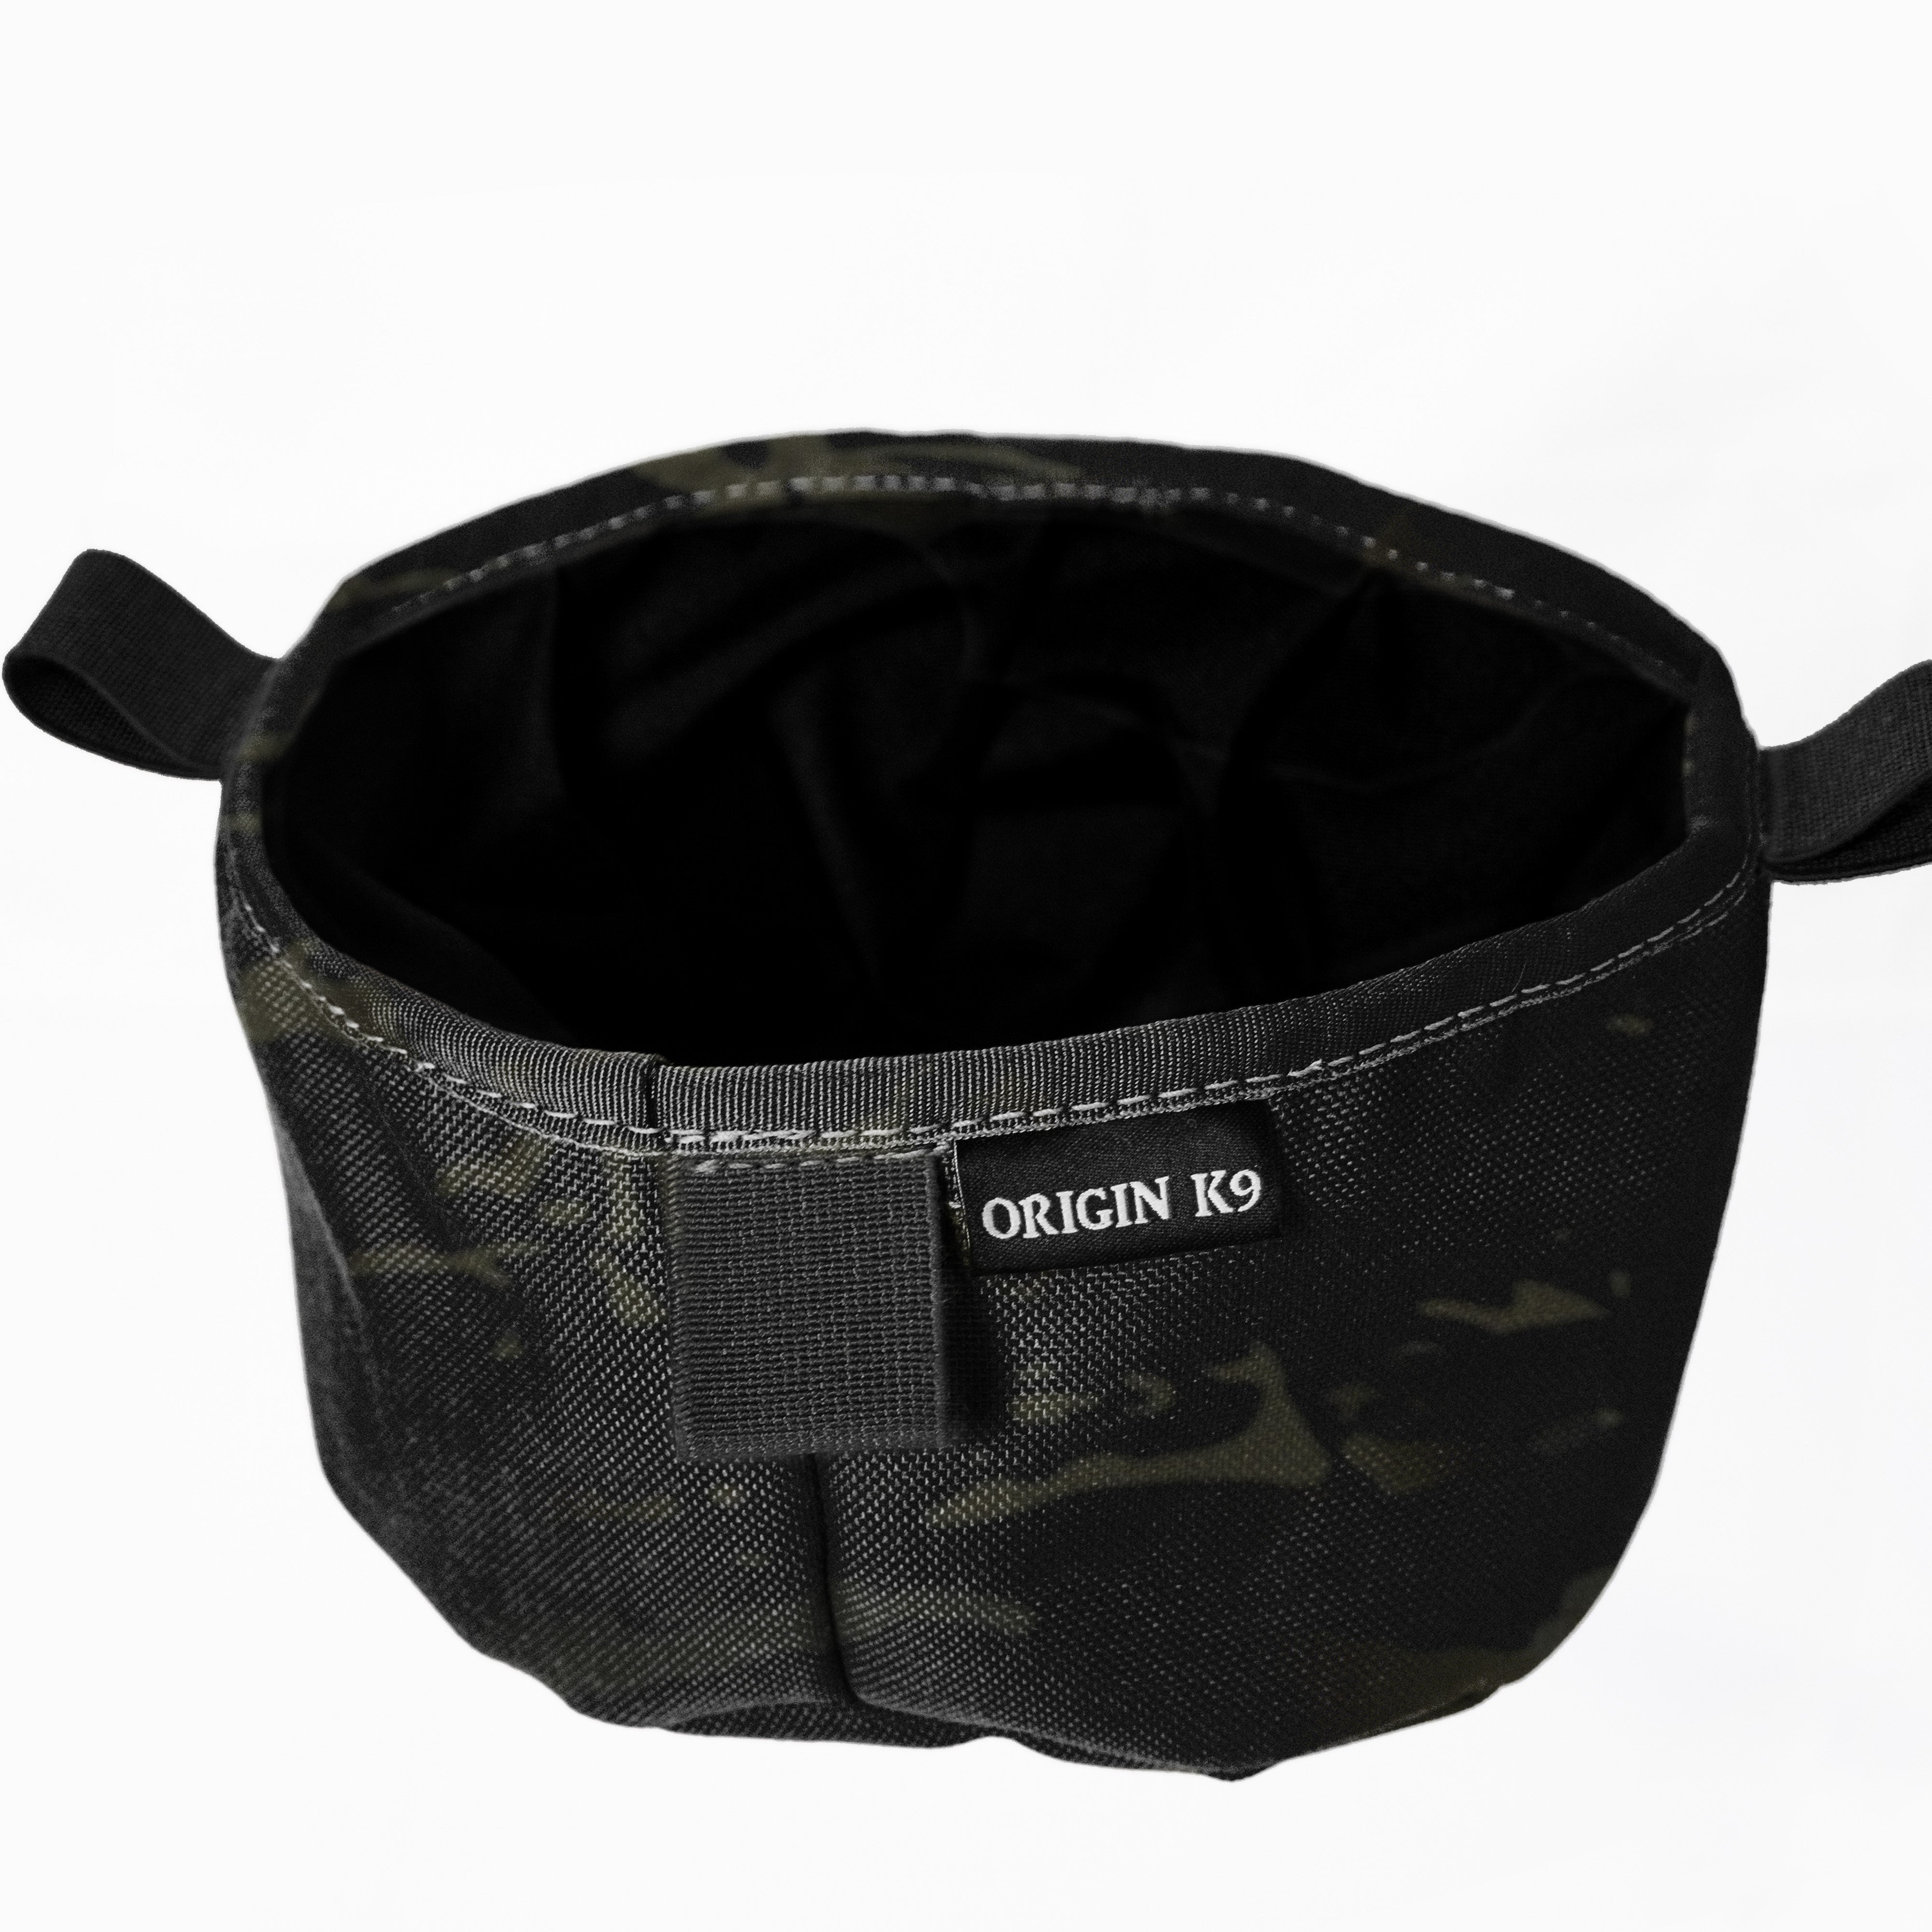 Collapsible Water Bowl - ORIGIN K9